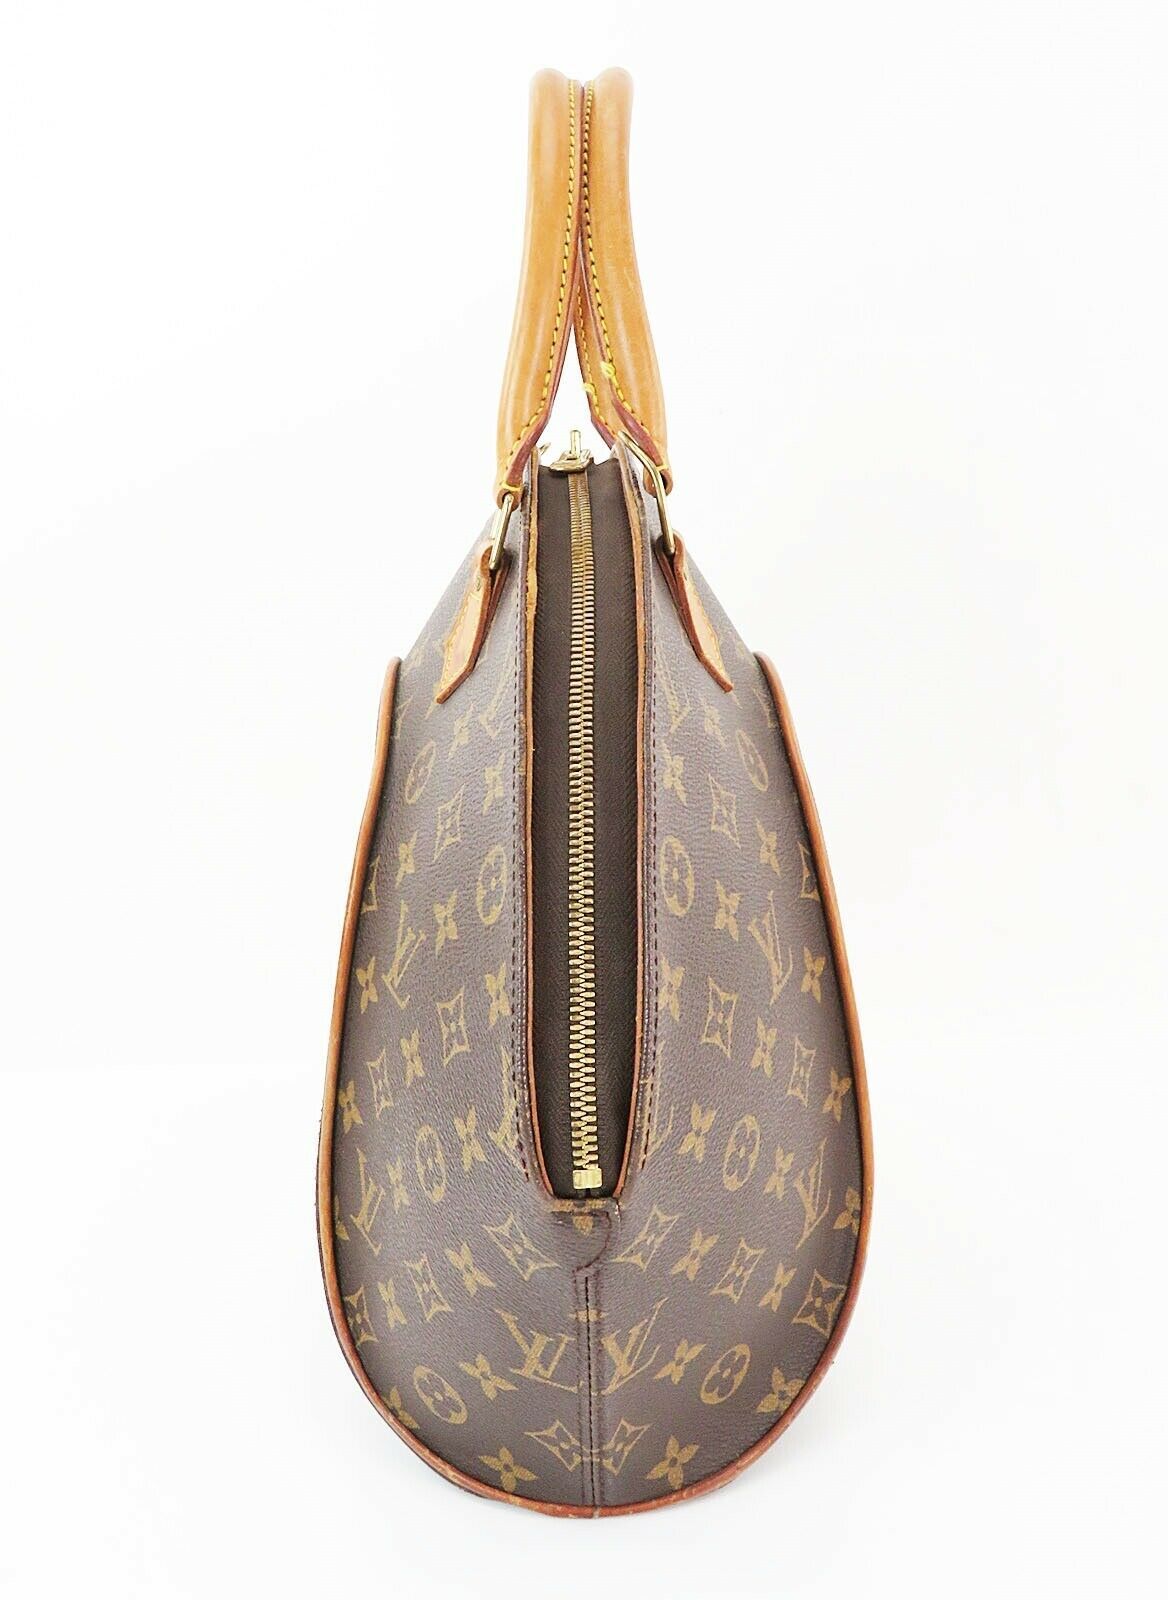 Authentic LOUIS VUITTON Ellipse MM Monogram Hand Bag Purse #32870 - Women&#39;s Handbags & Bags